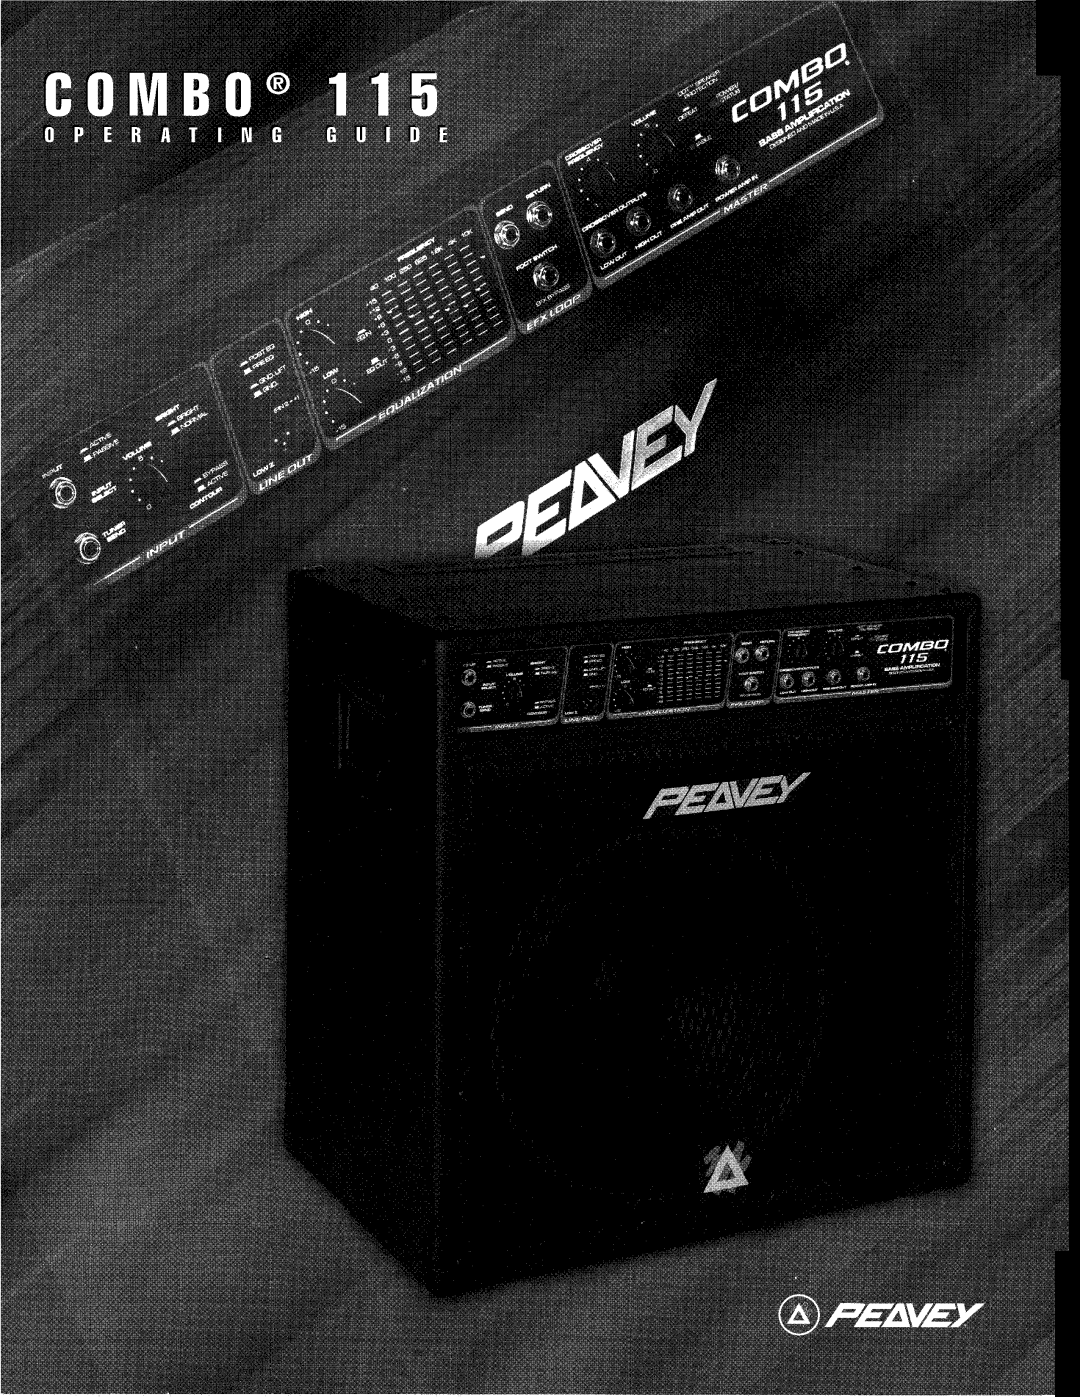 Peavey manual Delta Blues 115/210, Guitar Amplifier, Operating Manual 